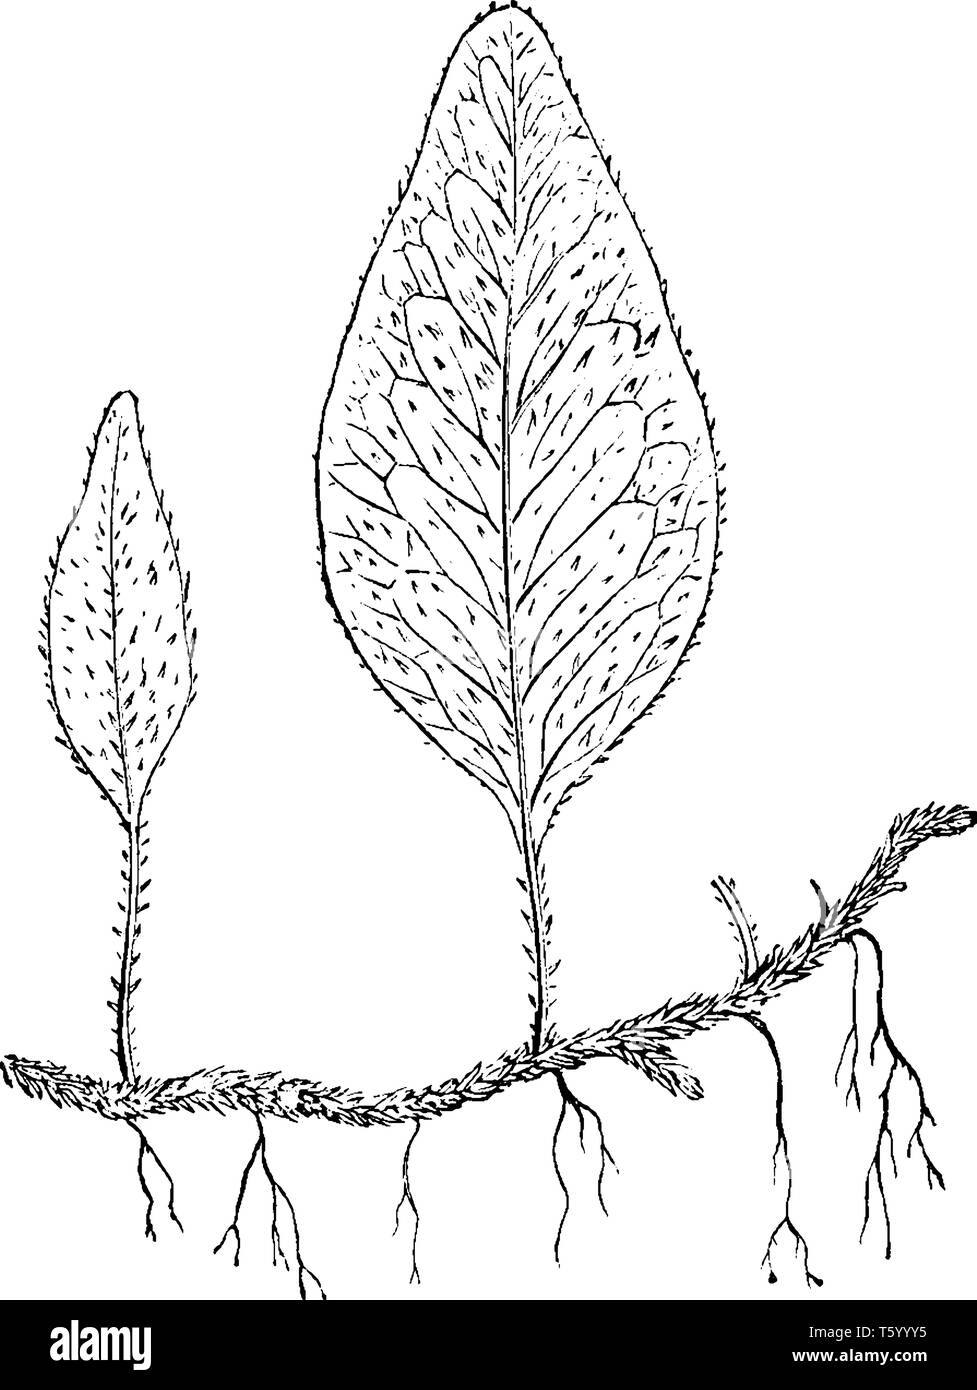 Das ist ein Bild von Polypodium Piloselloides Breite - schleichende Farn, die unfruchtbar sind länglich, vintage Strichzeichnung oder Gravur Abbildung. Stock Vektor